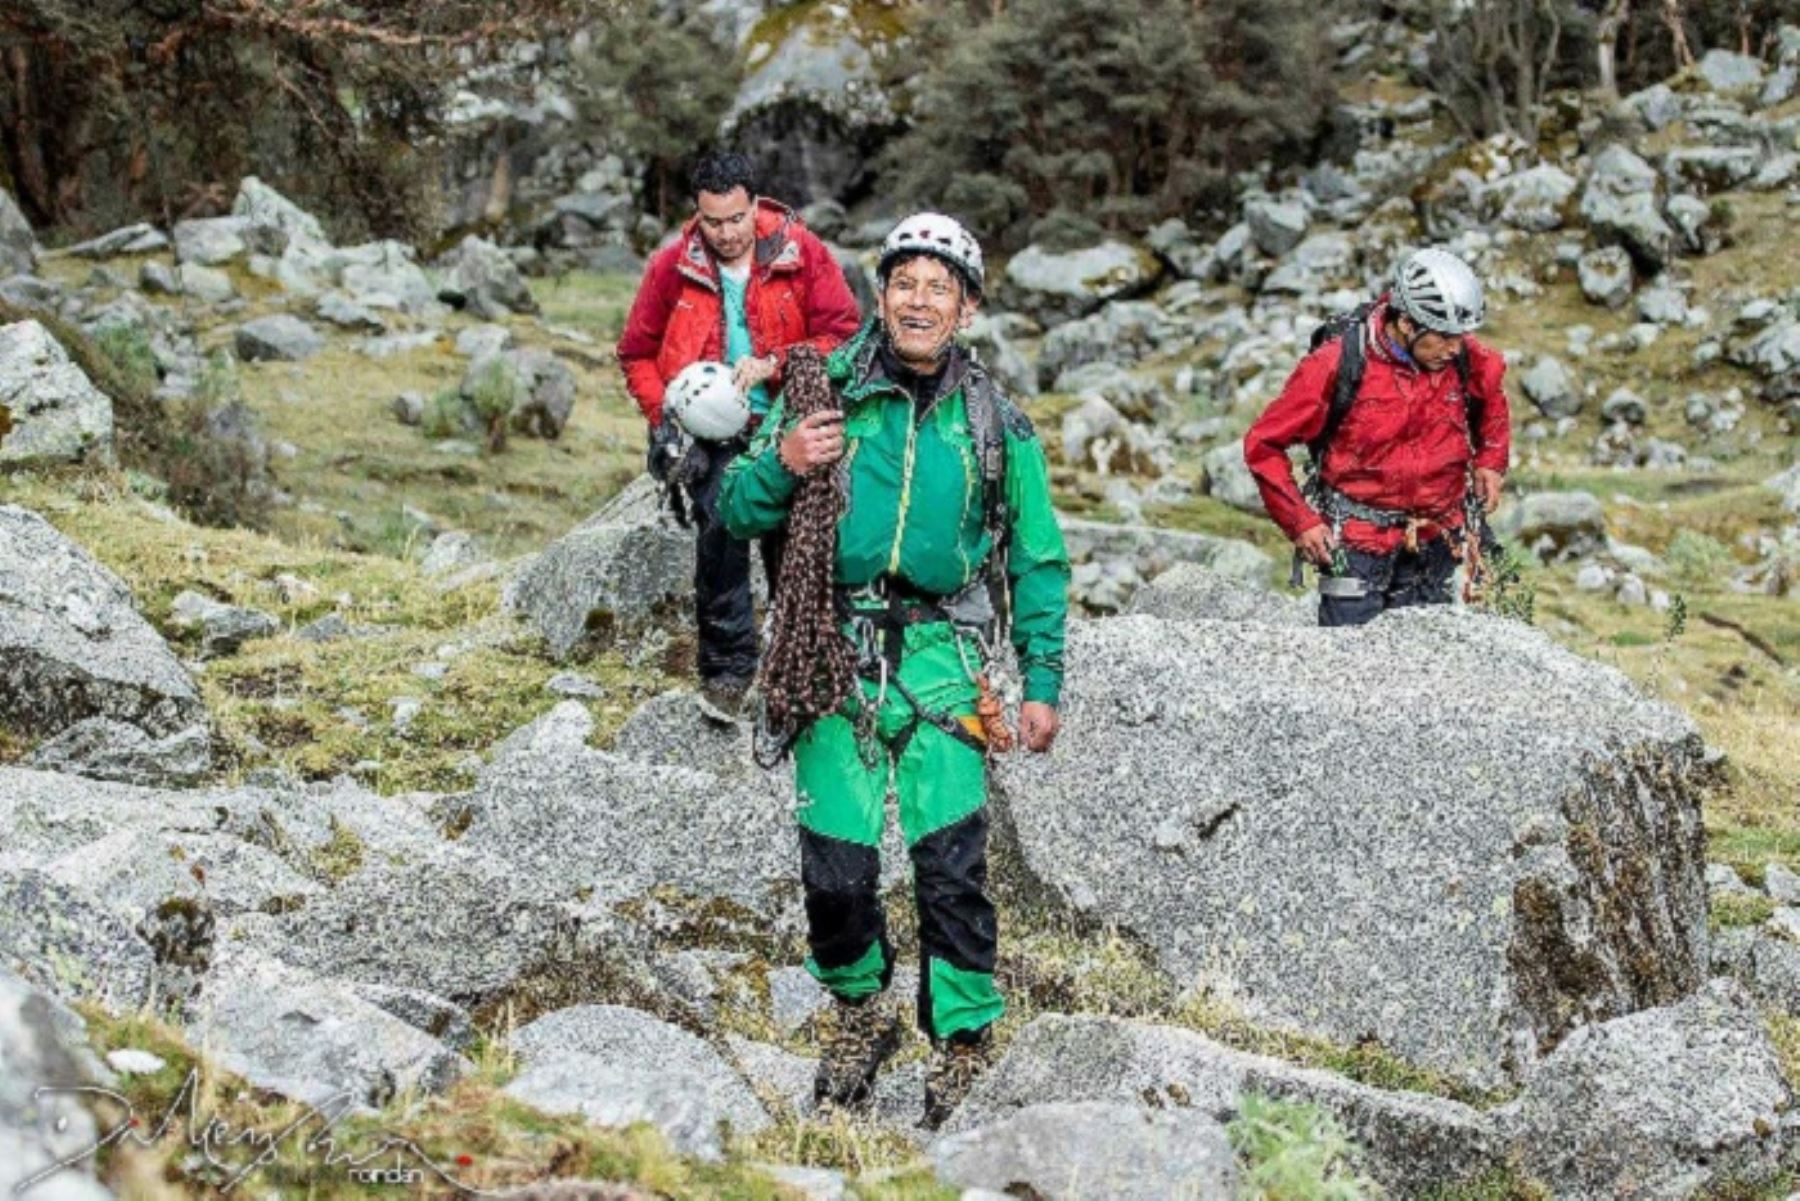 Guía de la AGMP, Rubén Darío Alva (30), falleció junto a cuatro montañistas españoles en el nevado Mateo, en la provincia ancashina de Carhuaz. Foto: ANDINA/Difusión